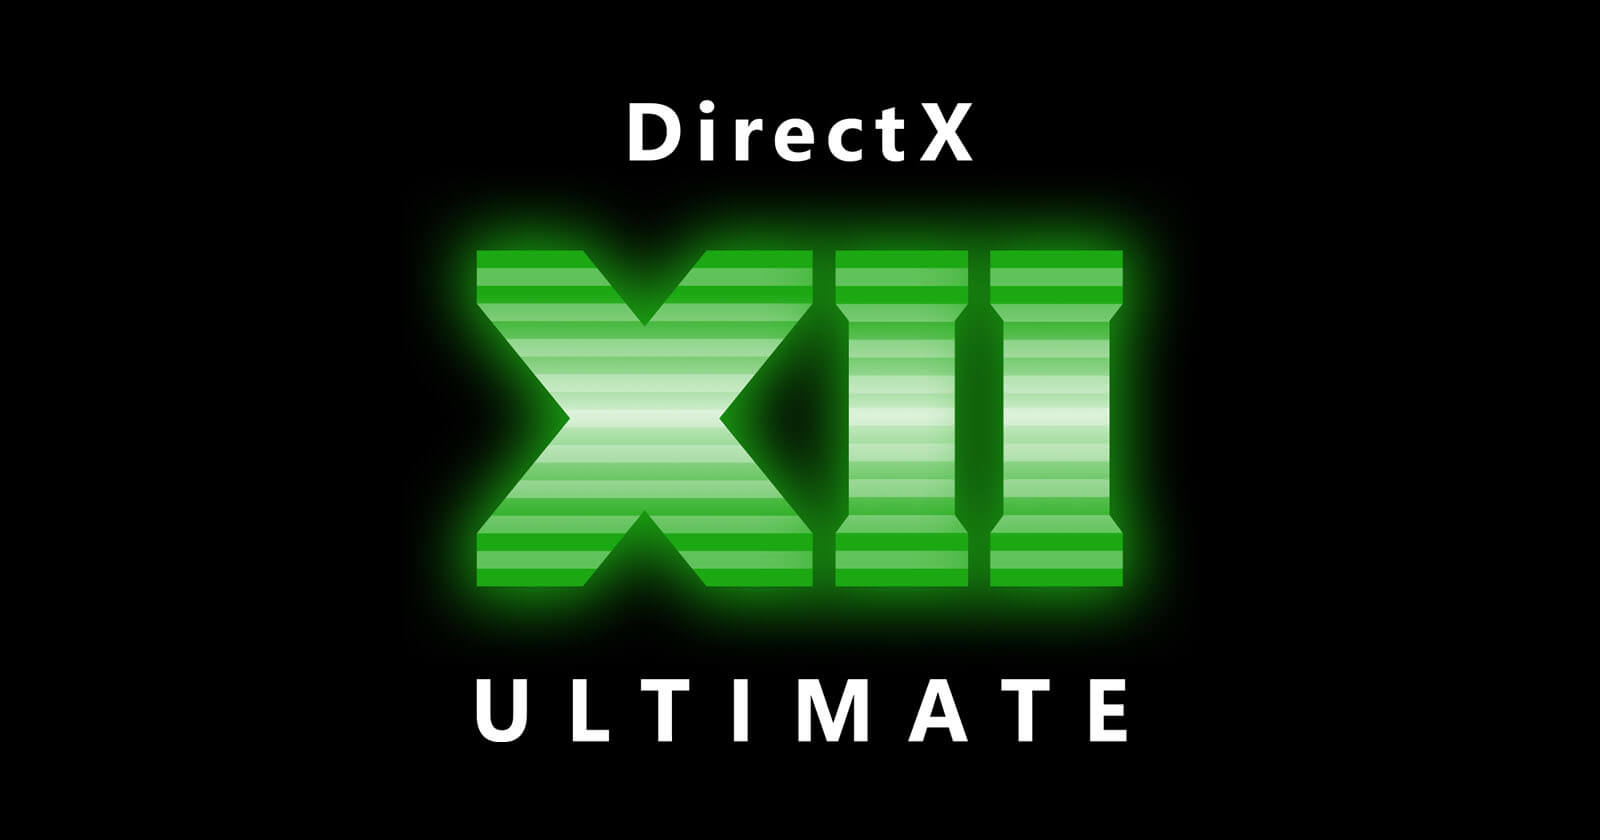 directx 10.1 download windows 7